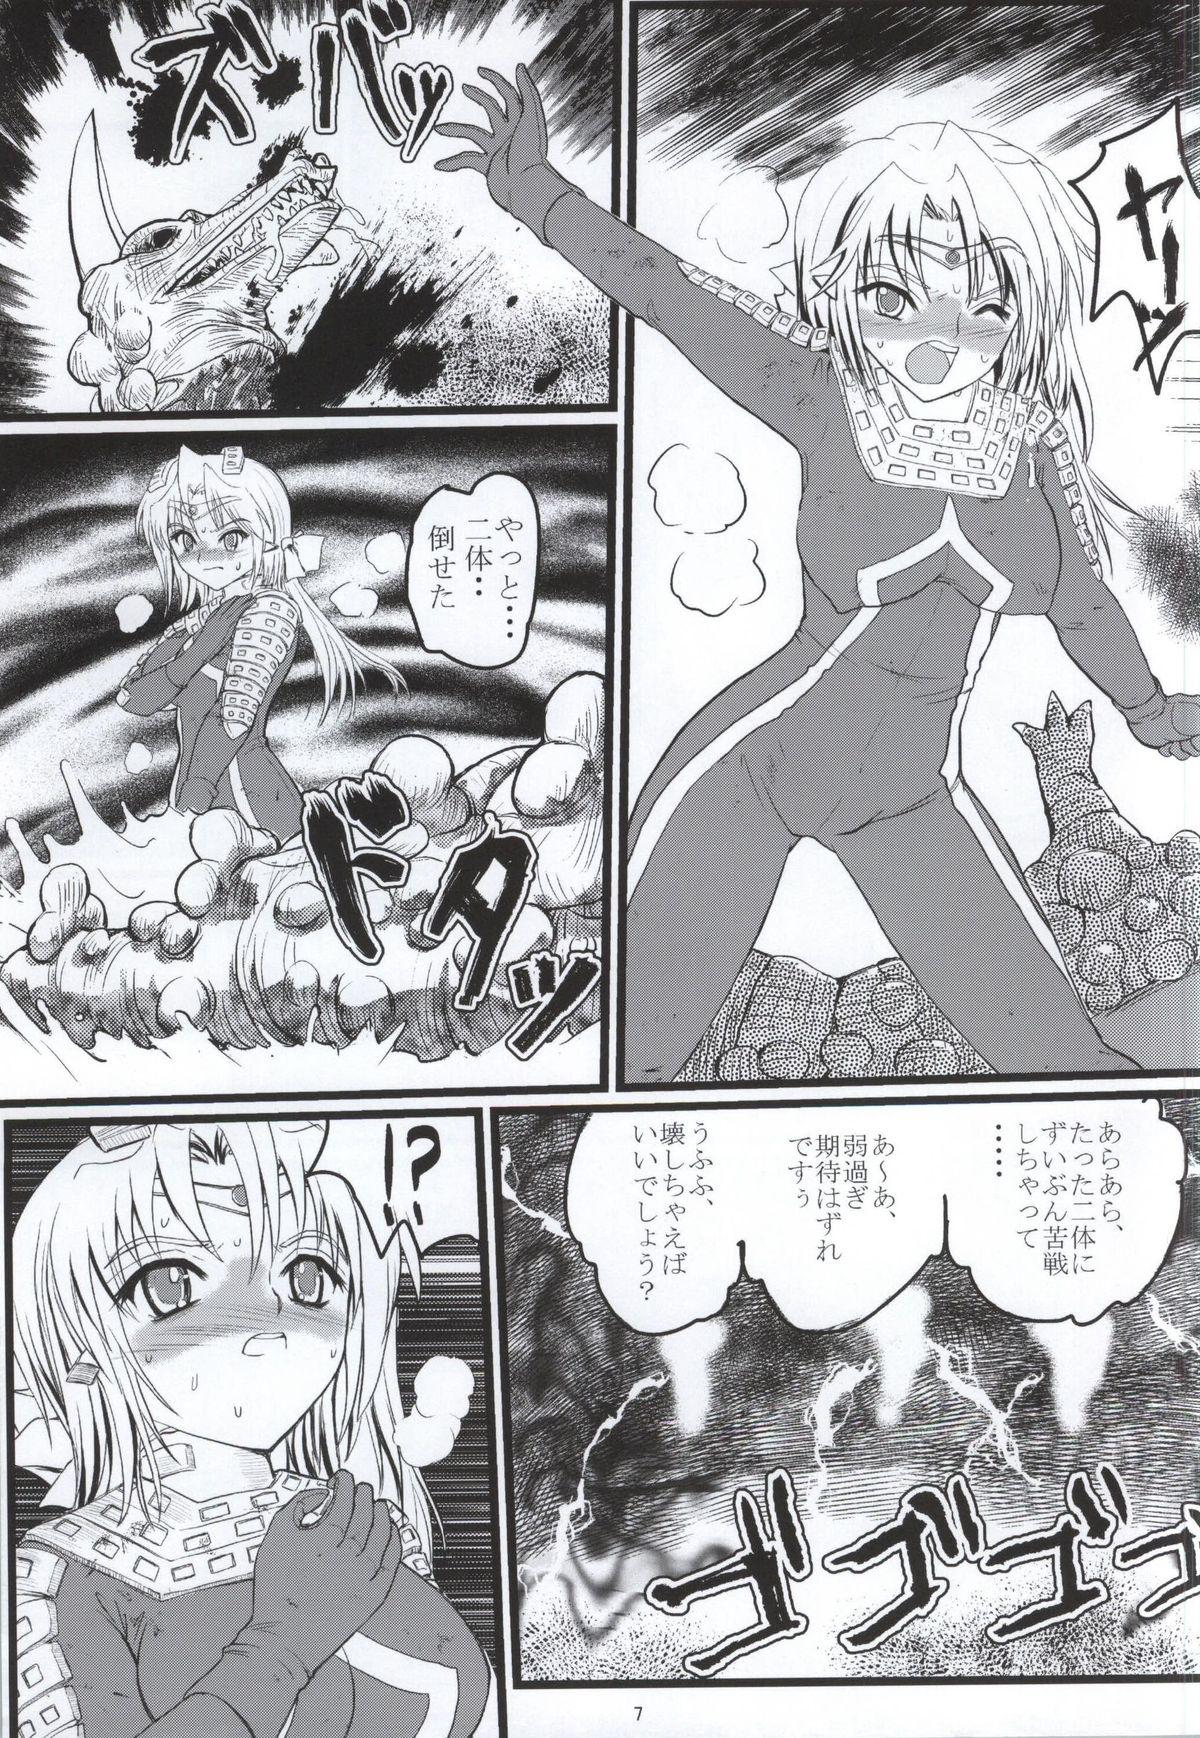 German Ultra Nanako Zettaizetsumei! Vol. 3 - Ultraman Cocksucking - Page 6